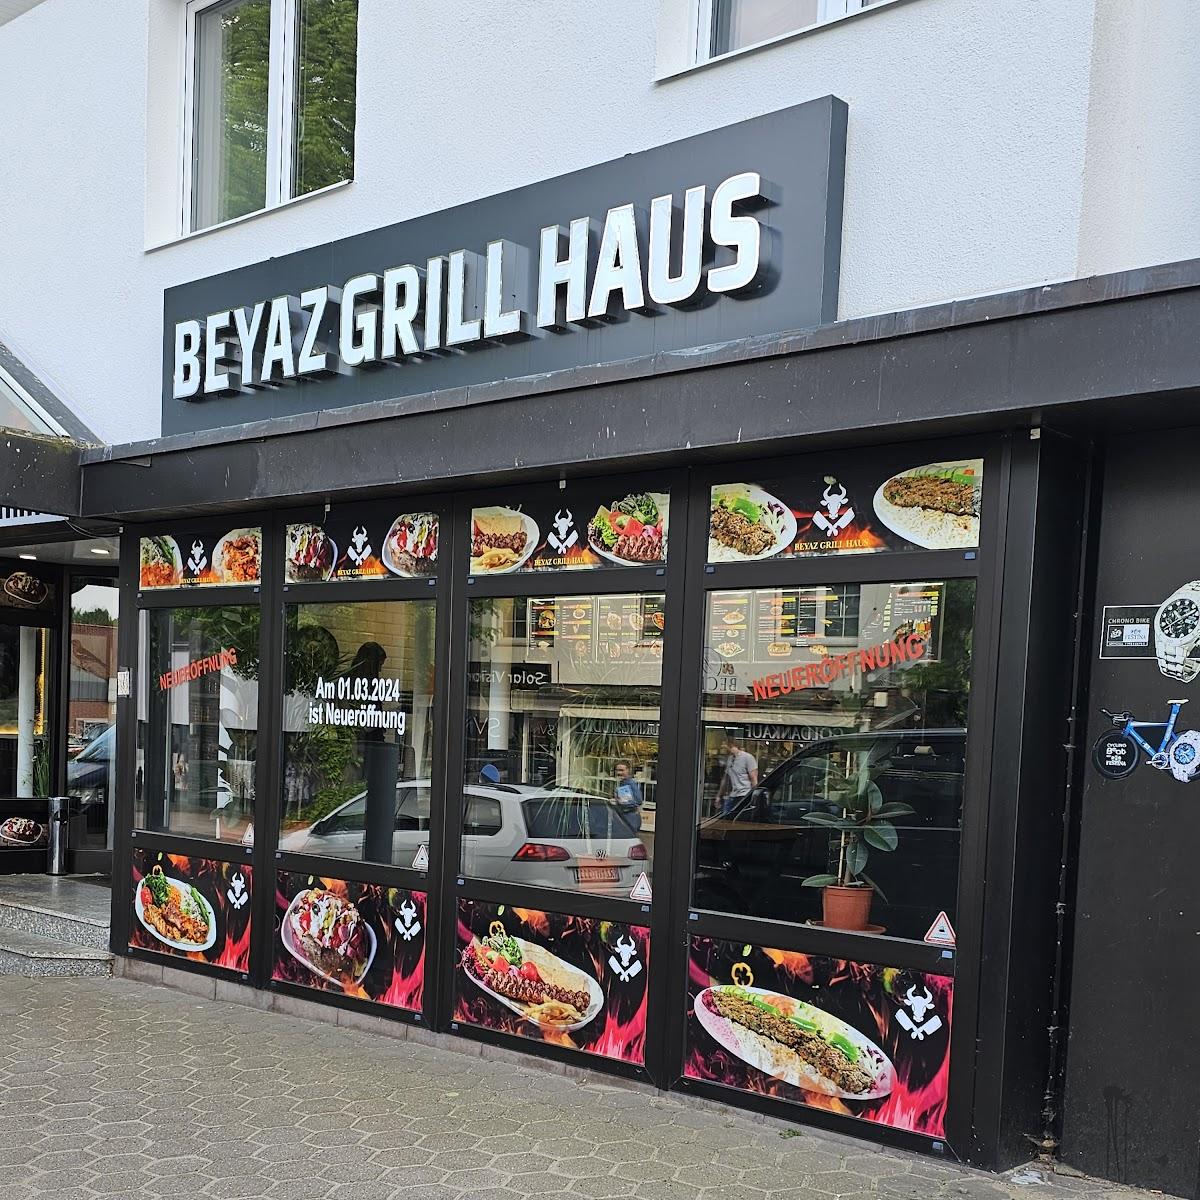 Restaurant "Beyaz Grill Haus" in Trittau